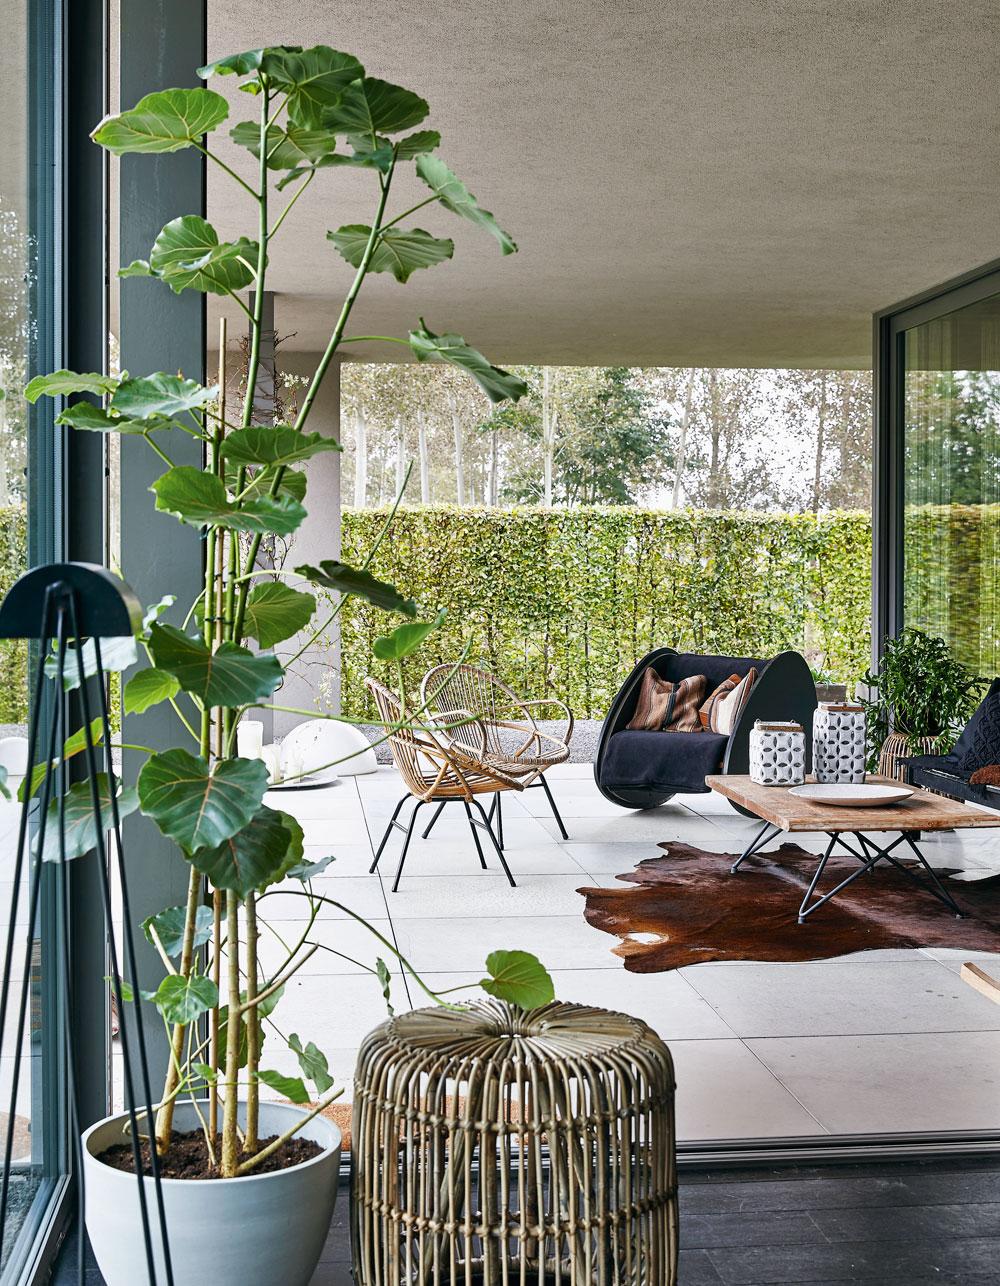 La terrasse couverte est un espace de vie supplémentaire aménagé à l'aide de mobilier en rotin vintage et d'un berceau transformé en siège, oeuvre de Linde Hermans.